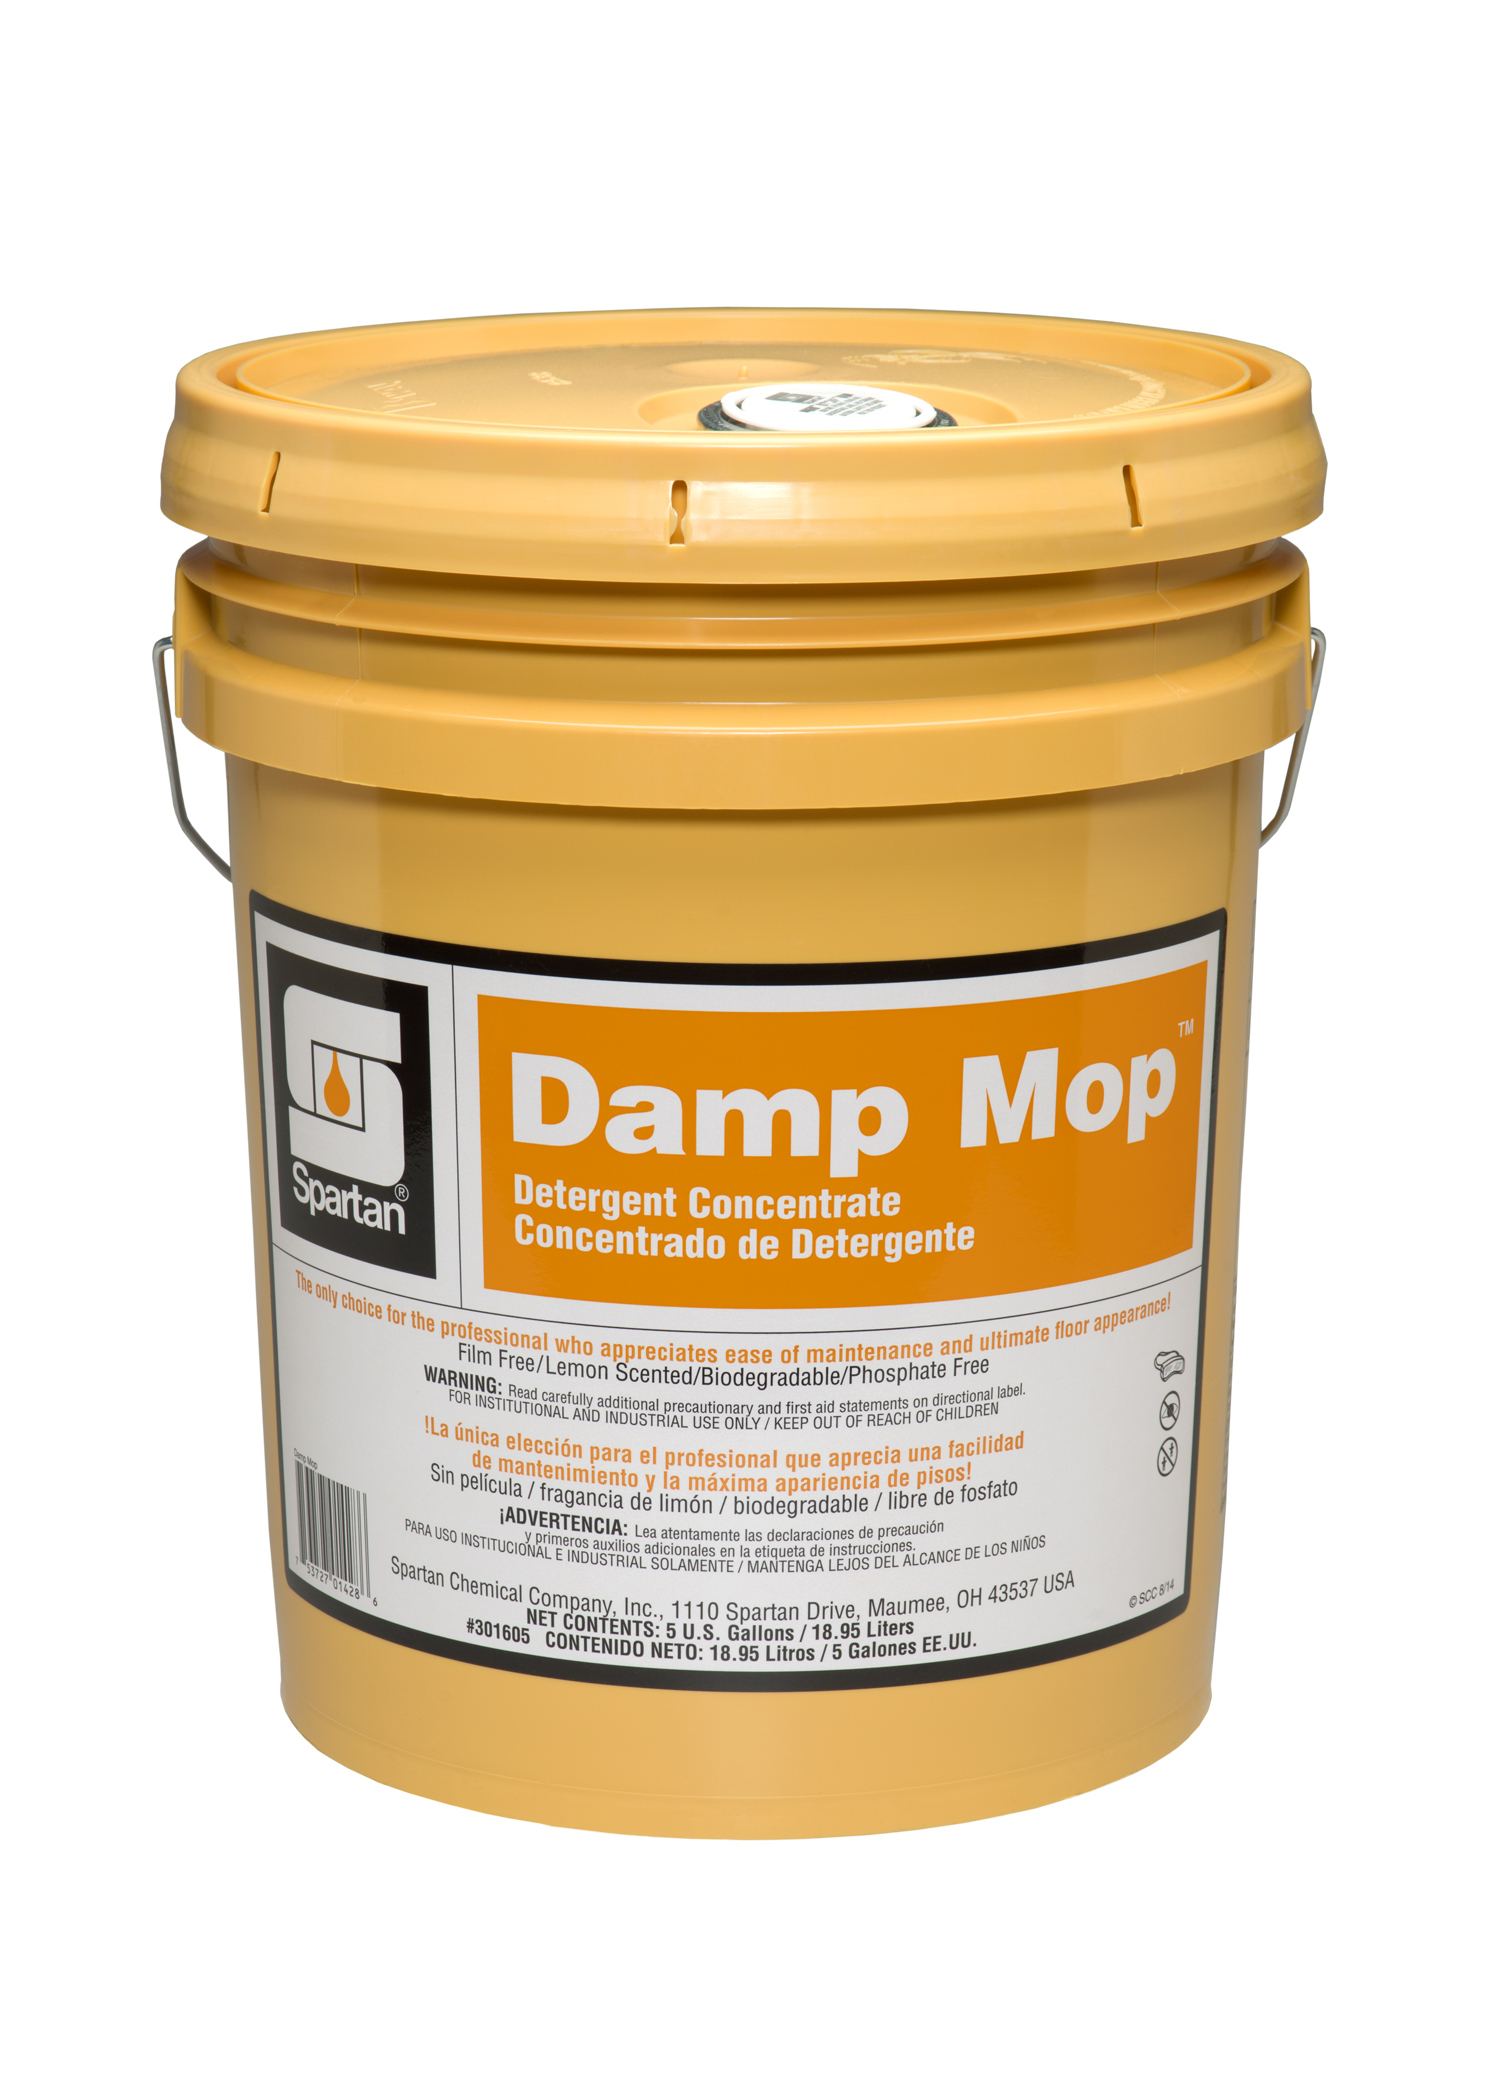 Damp Mop 5 gallon pail